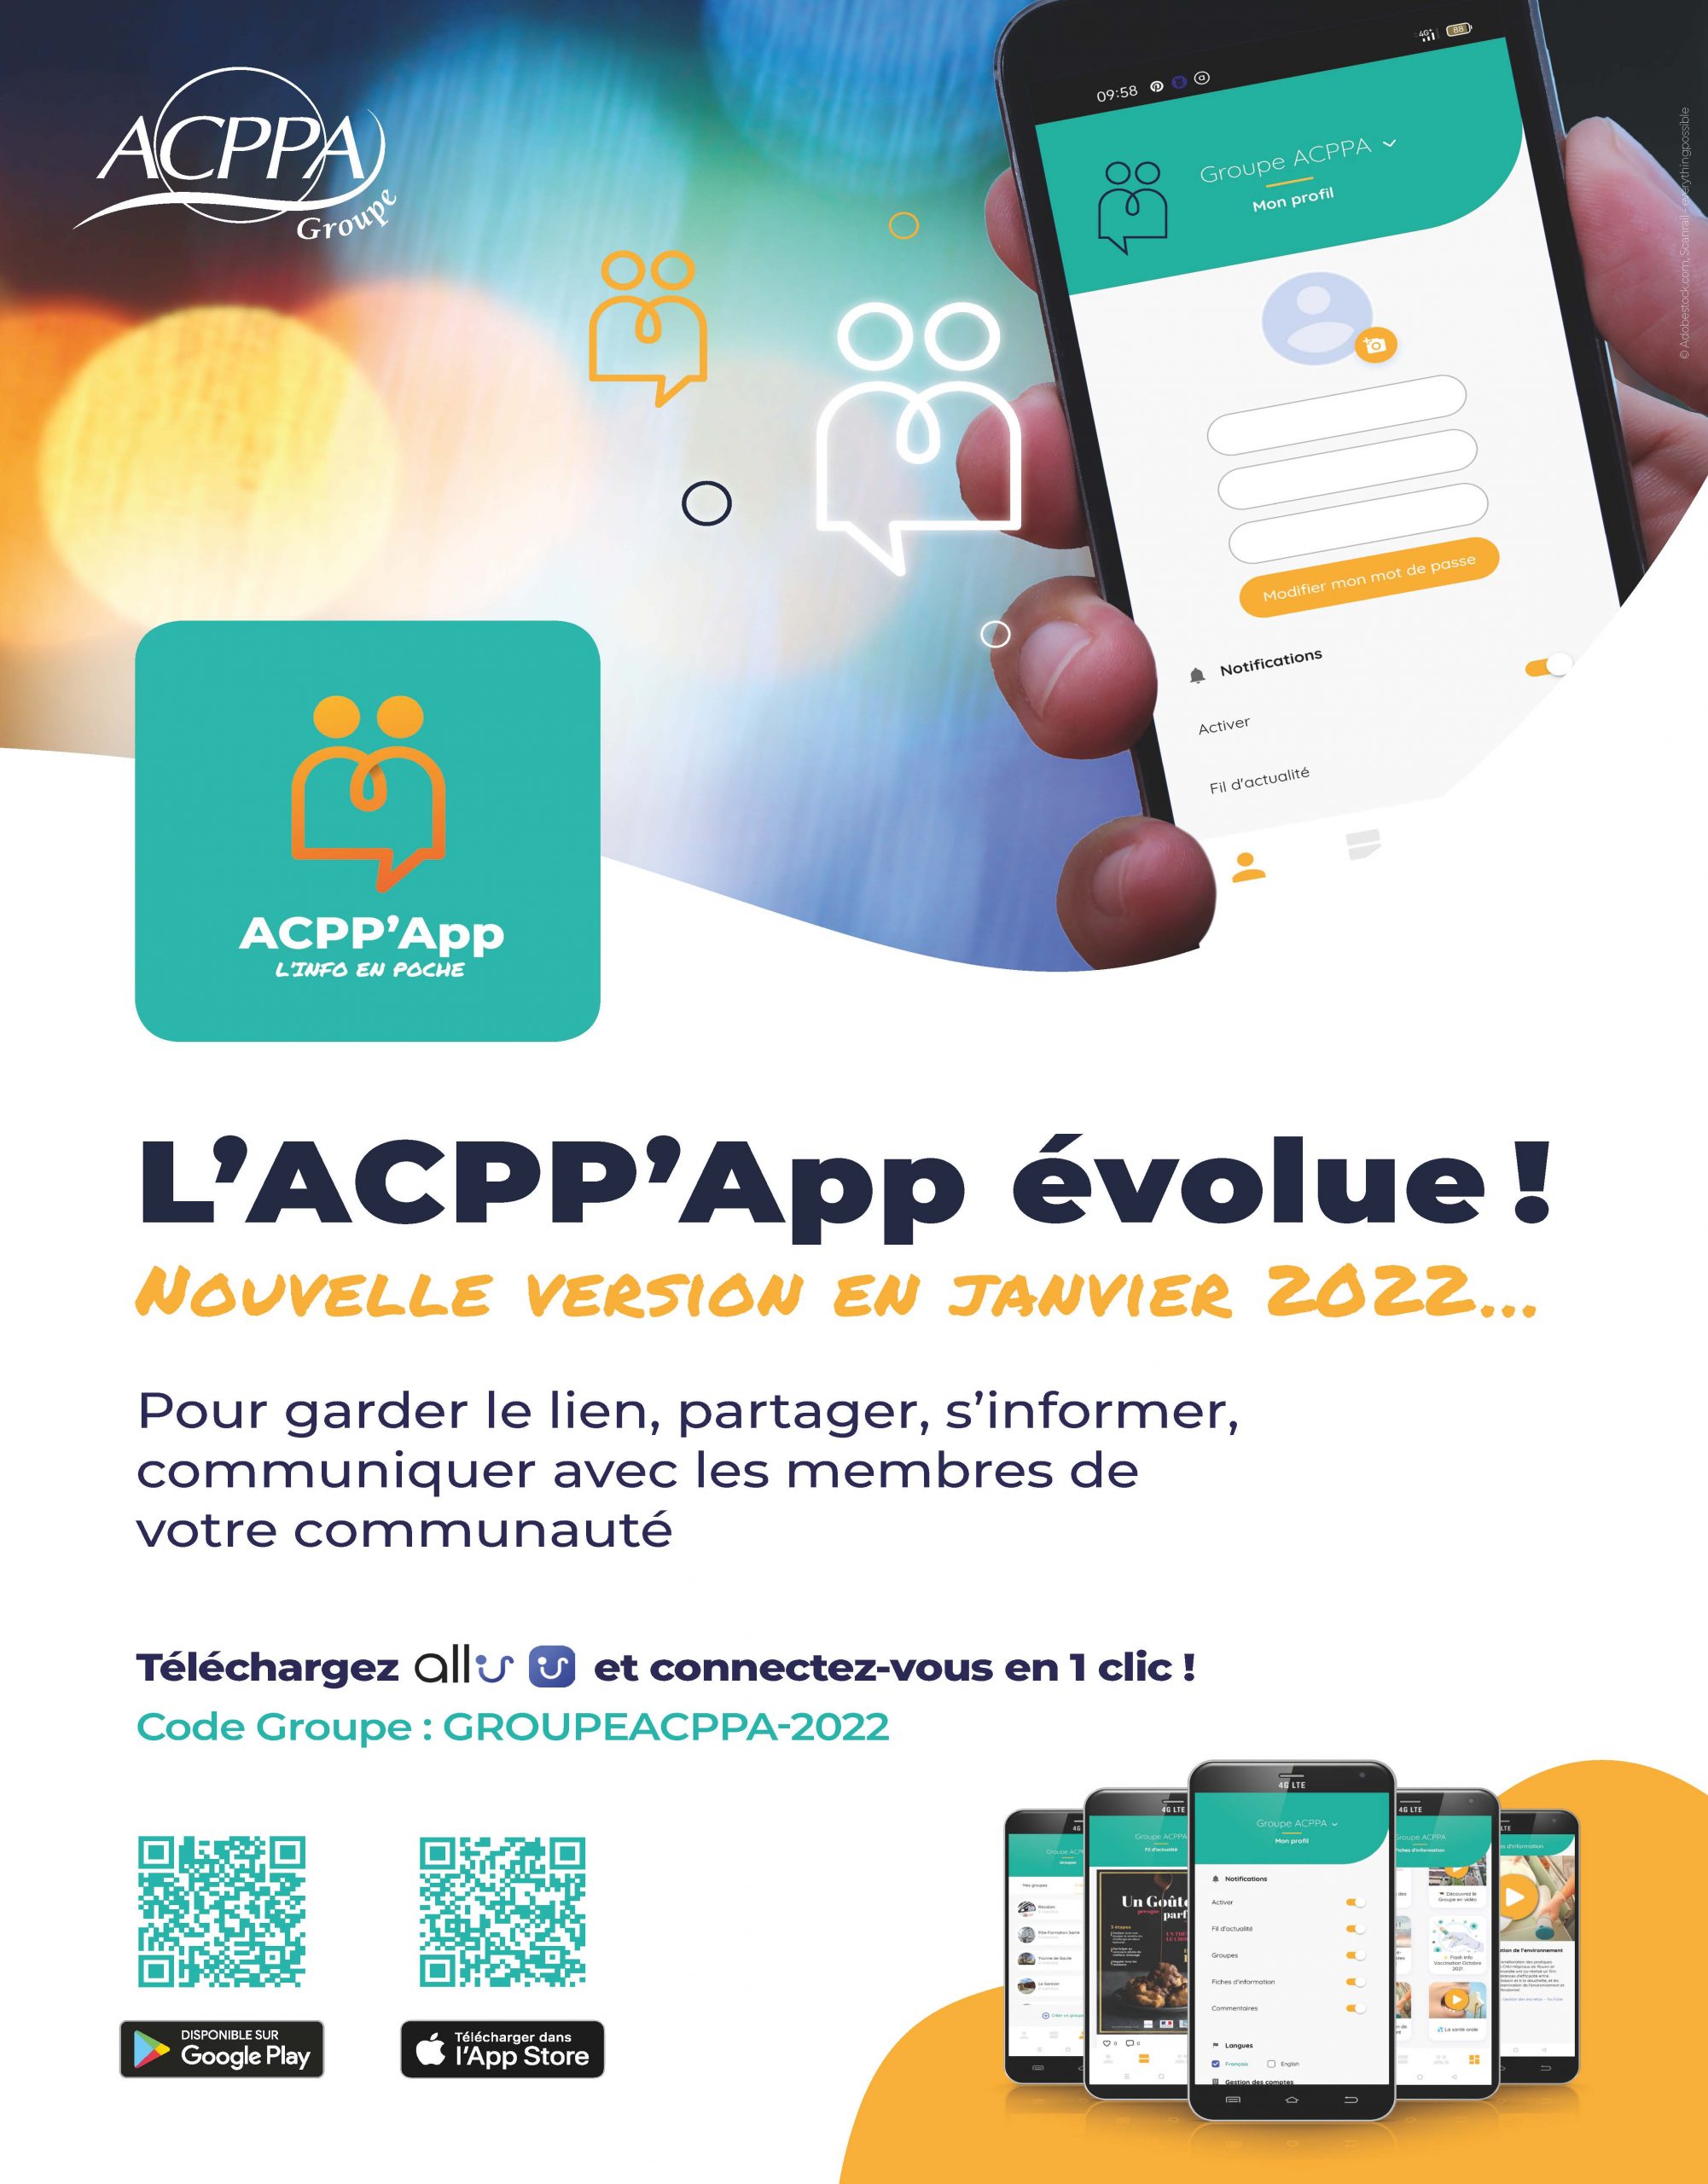 Rejoignez vos communautés sur l’application ACPP’App